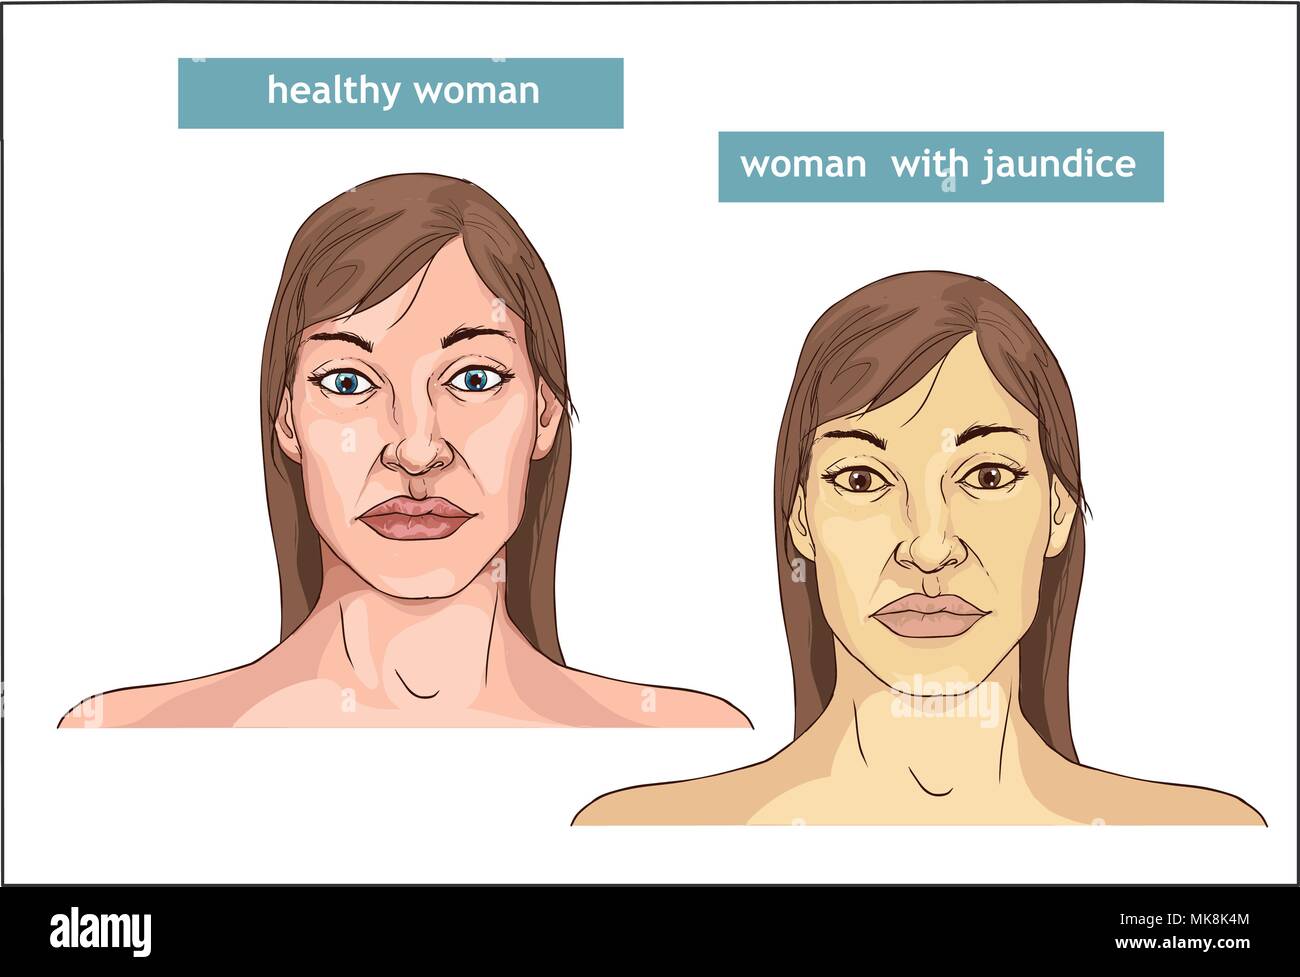 La comparaison entre la peau normale et le jaunissement de la Jaunisse Illustration de Vecteur